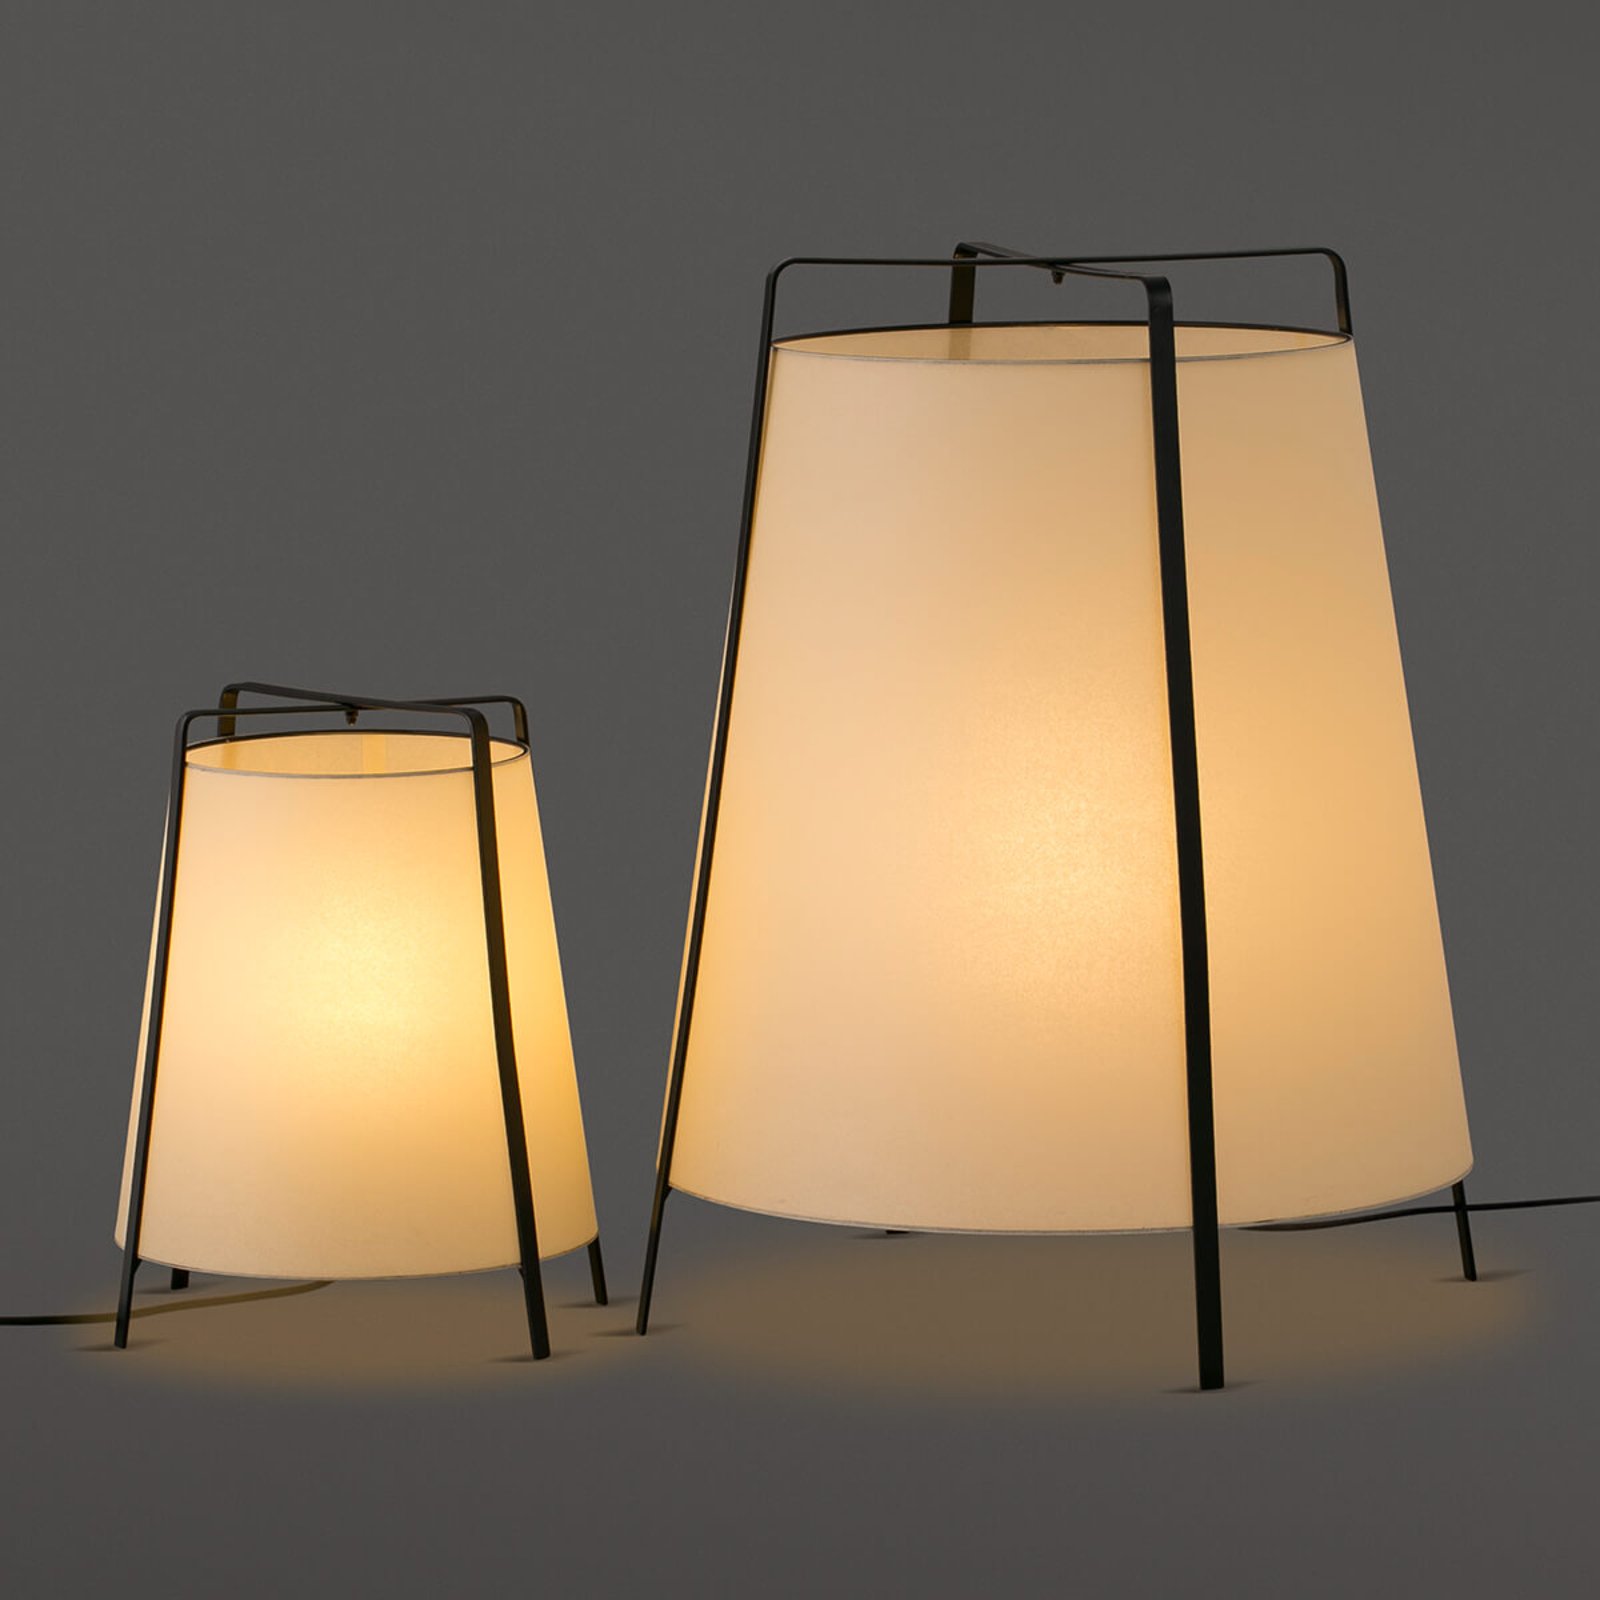 Akane stolna lampa proizvedena u Španjolskoj